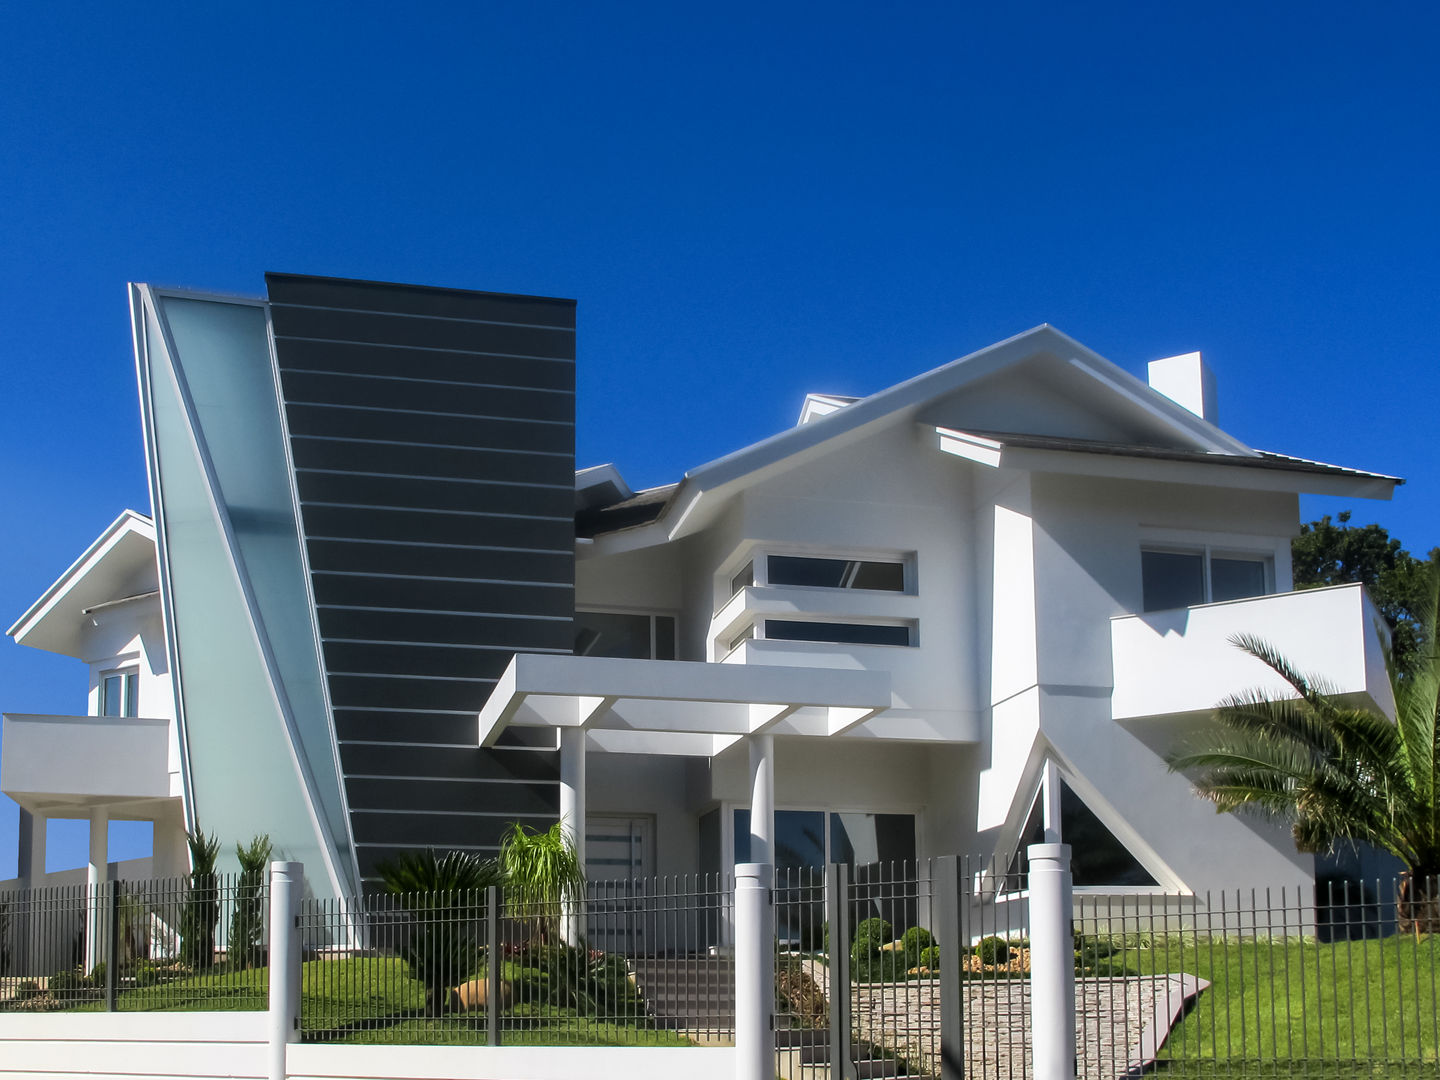 Casa com tipologias diferentes Simone Miranda Representante - Amplex Aberturas em PVC Condomínios